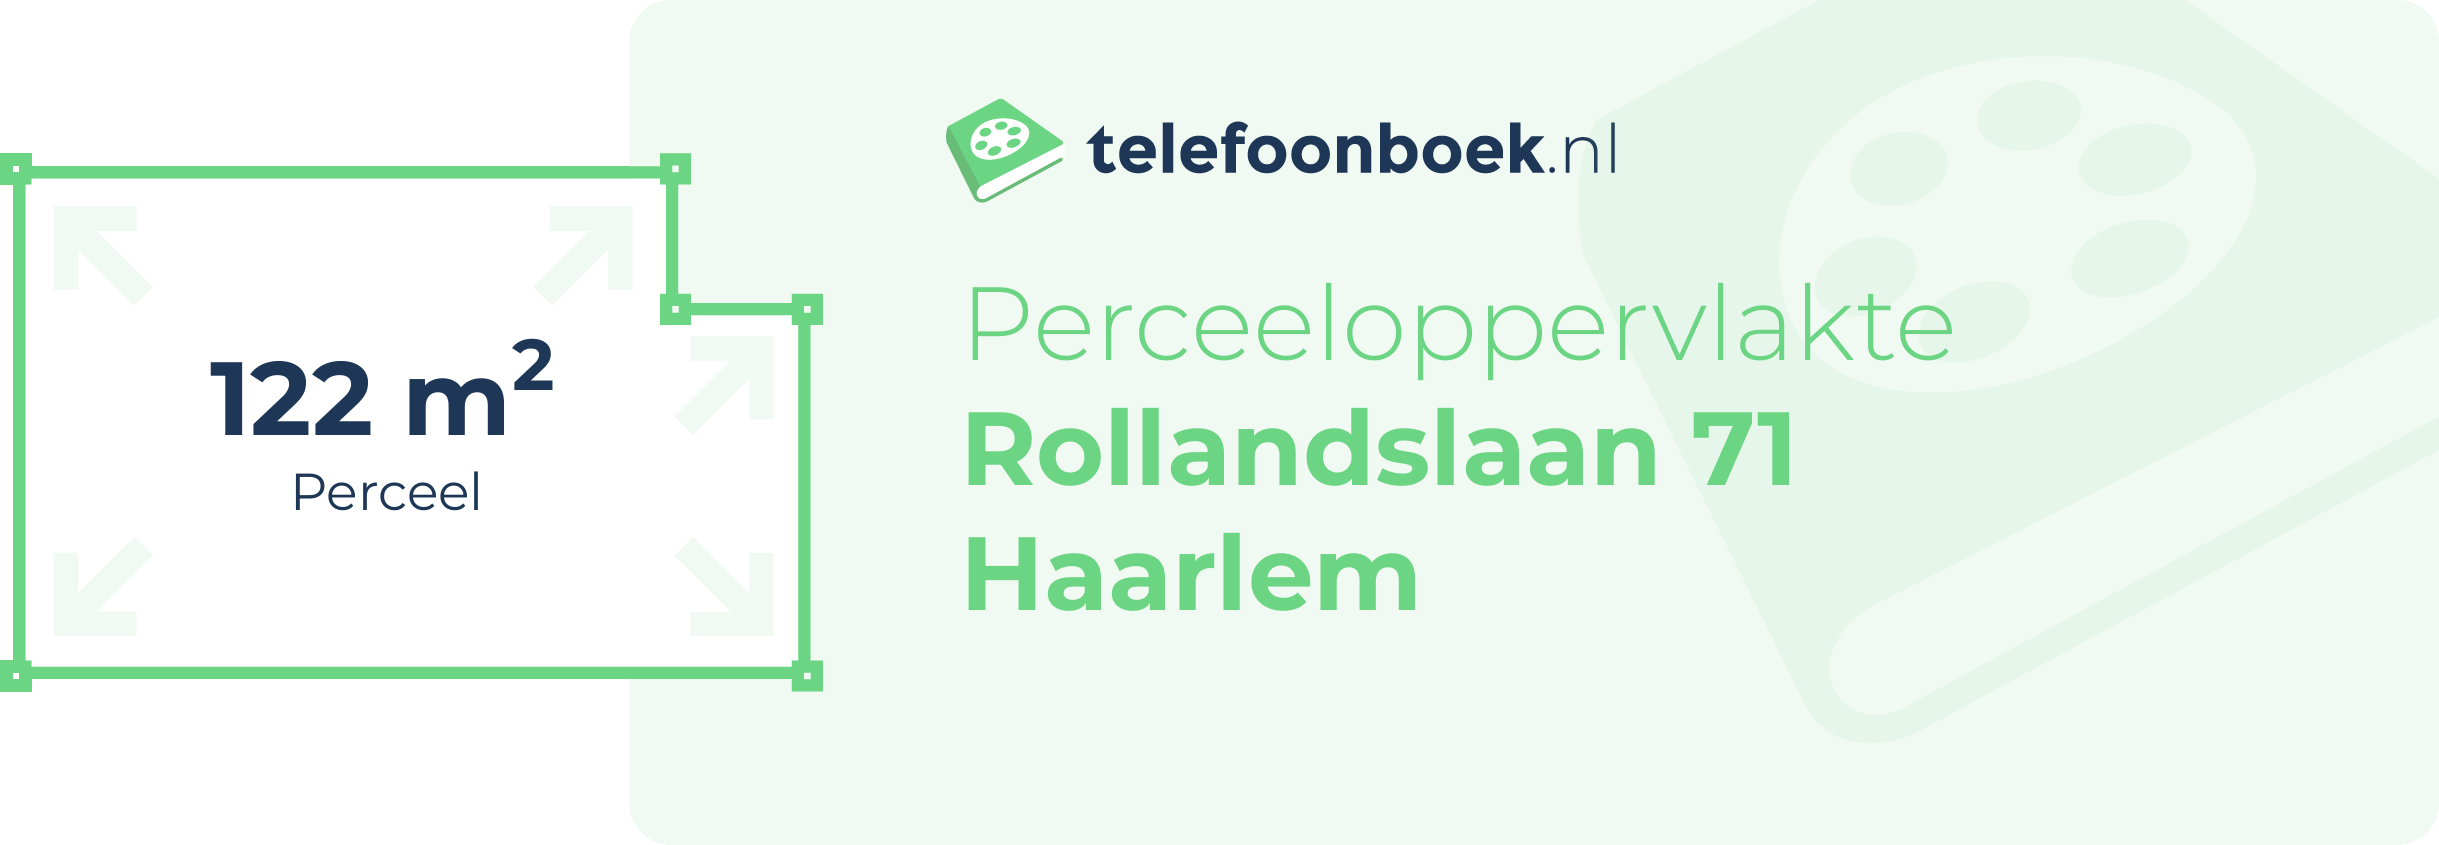 Perceeloppervlakte Rollandslaan 71 Haarlem